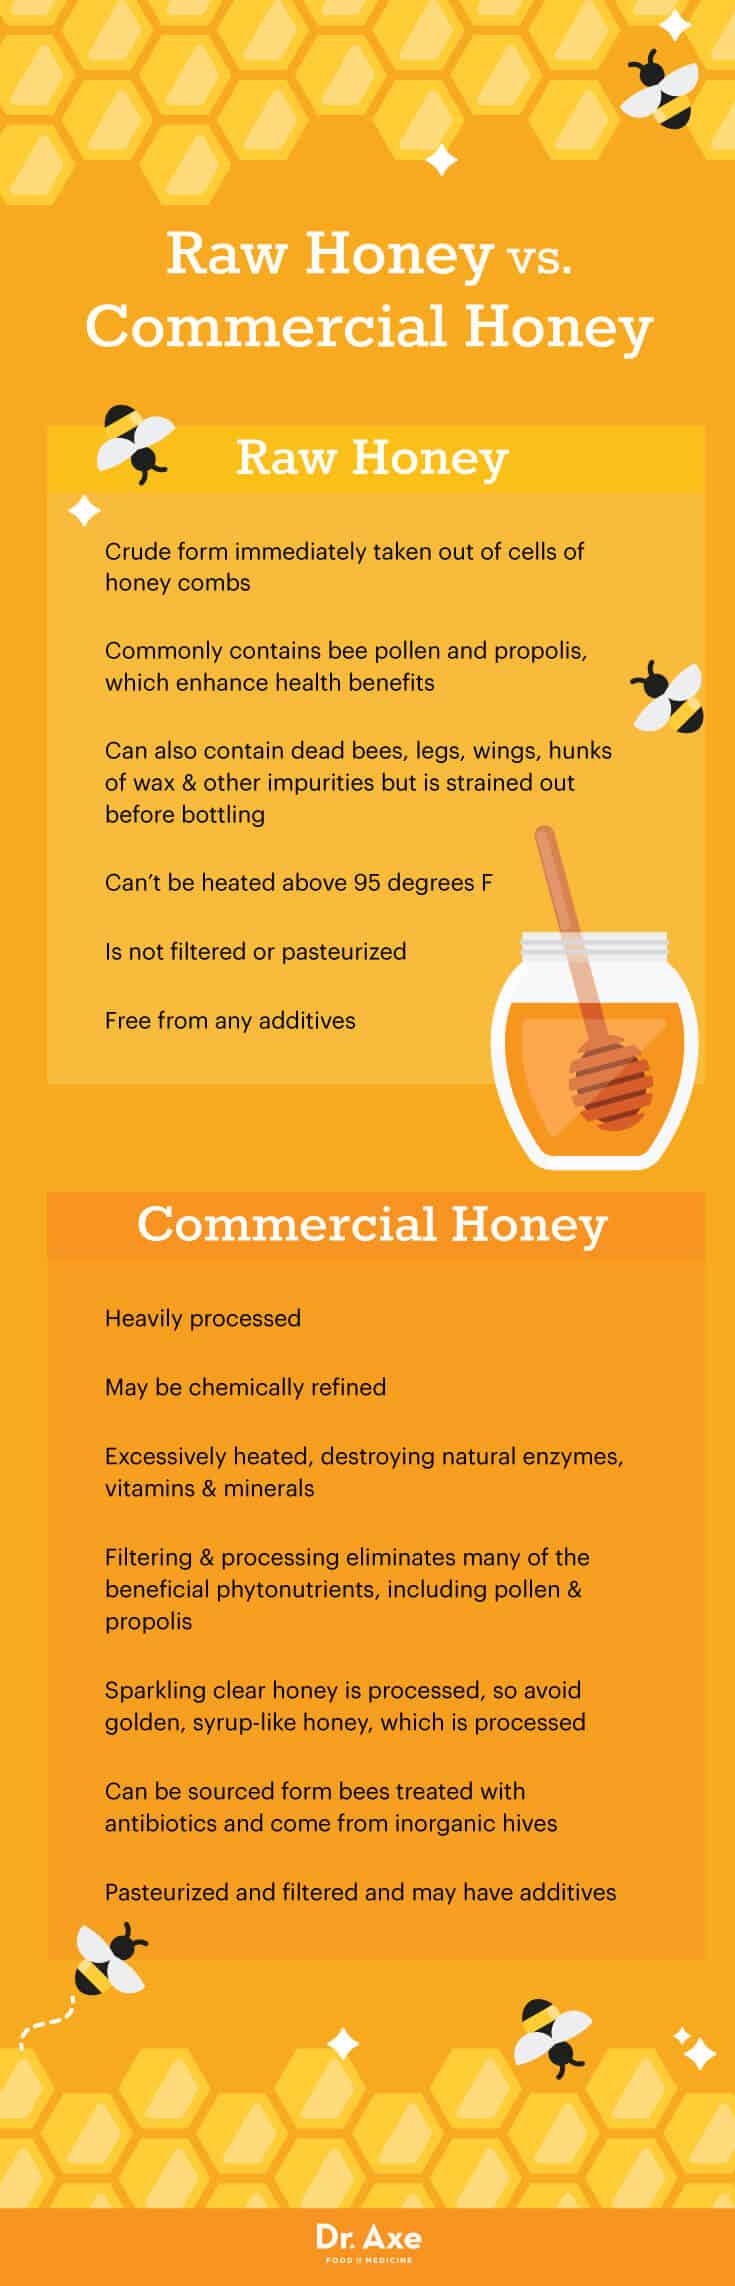 Raw honey vs. commercial honey - Dr. Axe